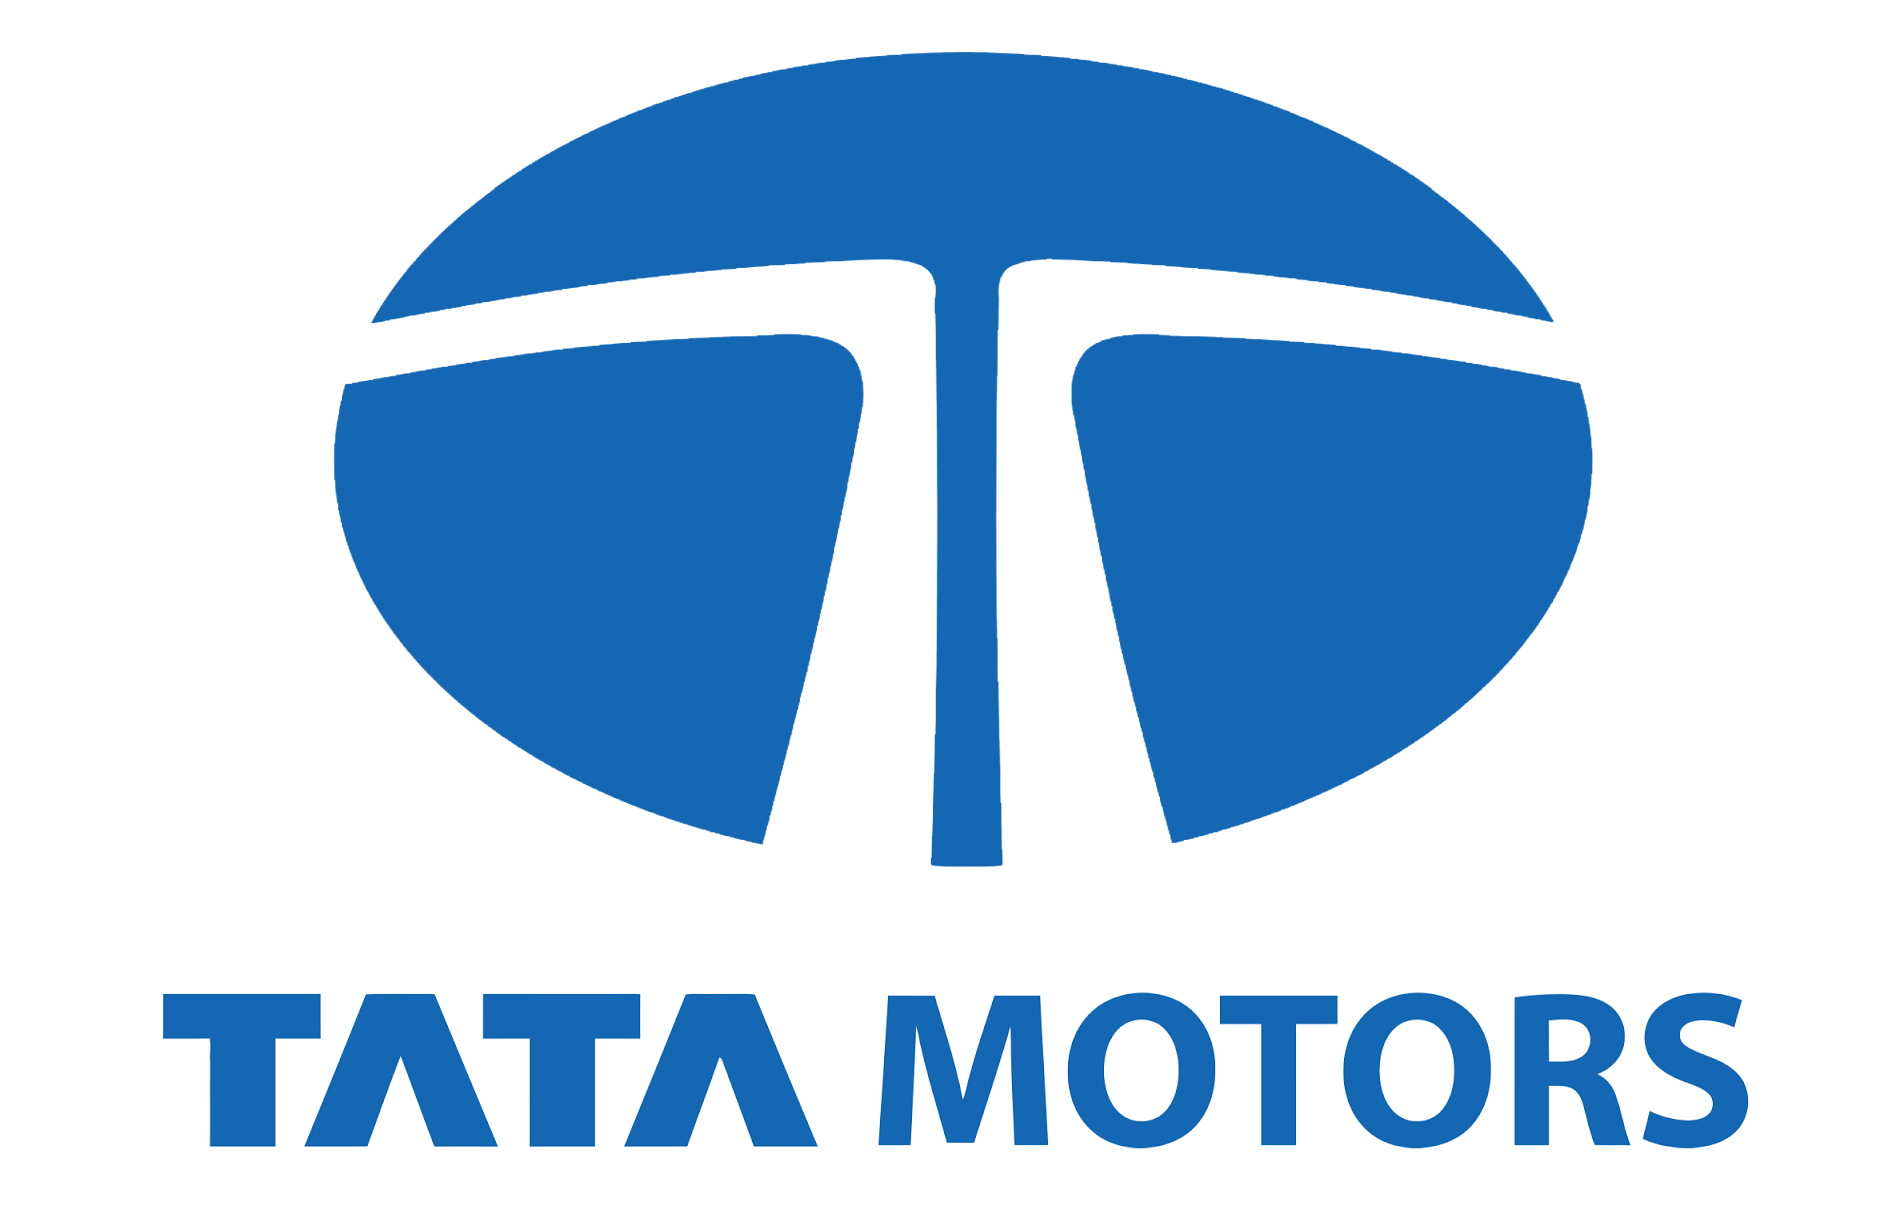 Tata Motors Cars Showroom - Brijlax Motors Logo